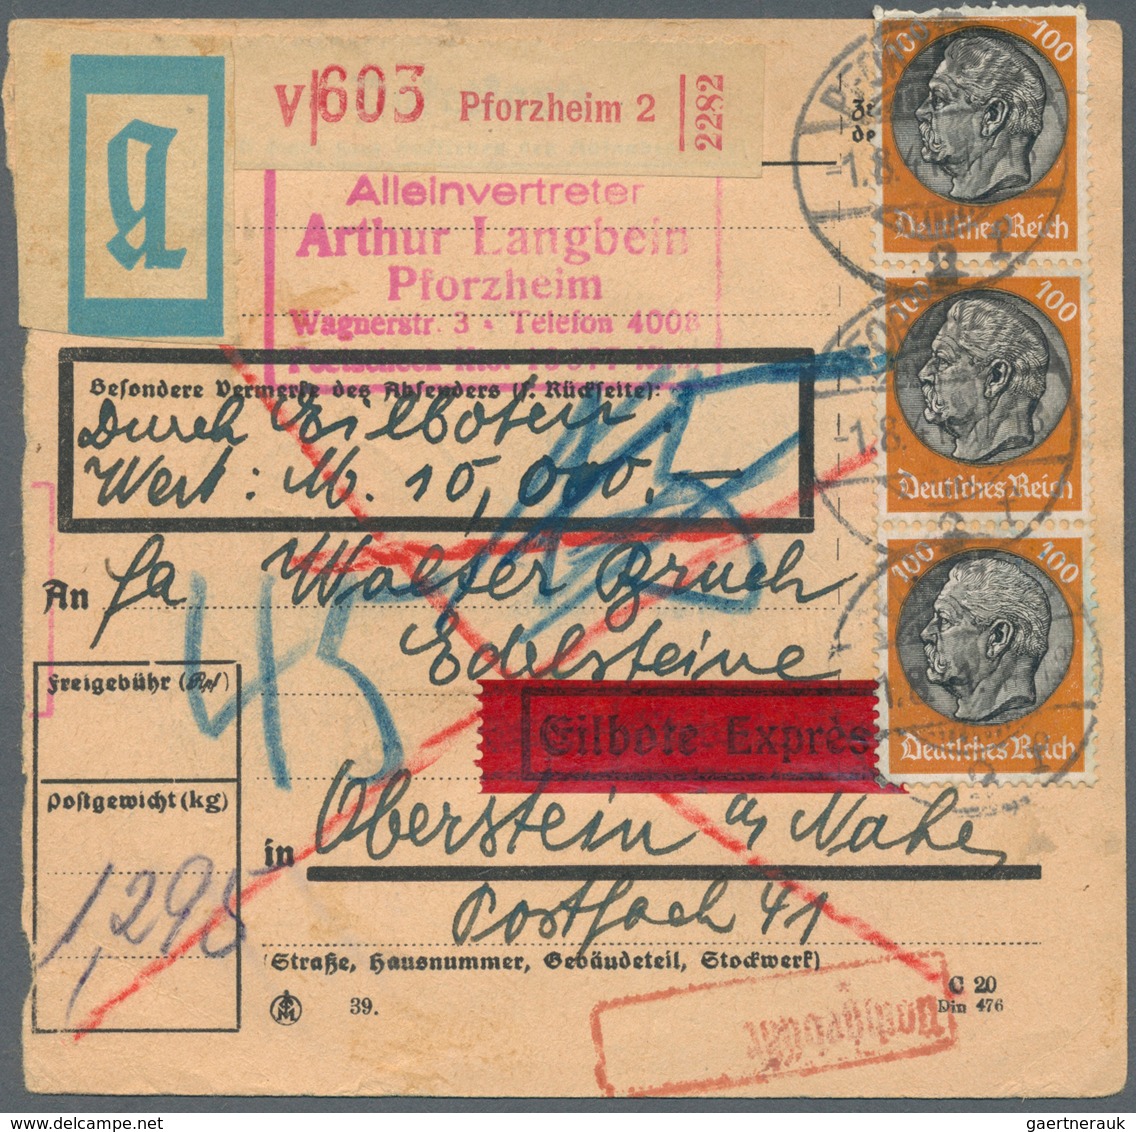 Deutsches Reich - 3. Reich: 1933/1945, Hindenburg Wz. Waffeln und Hakenkreuz und Hitler Dauerserienf